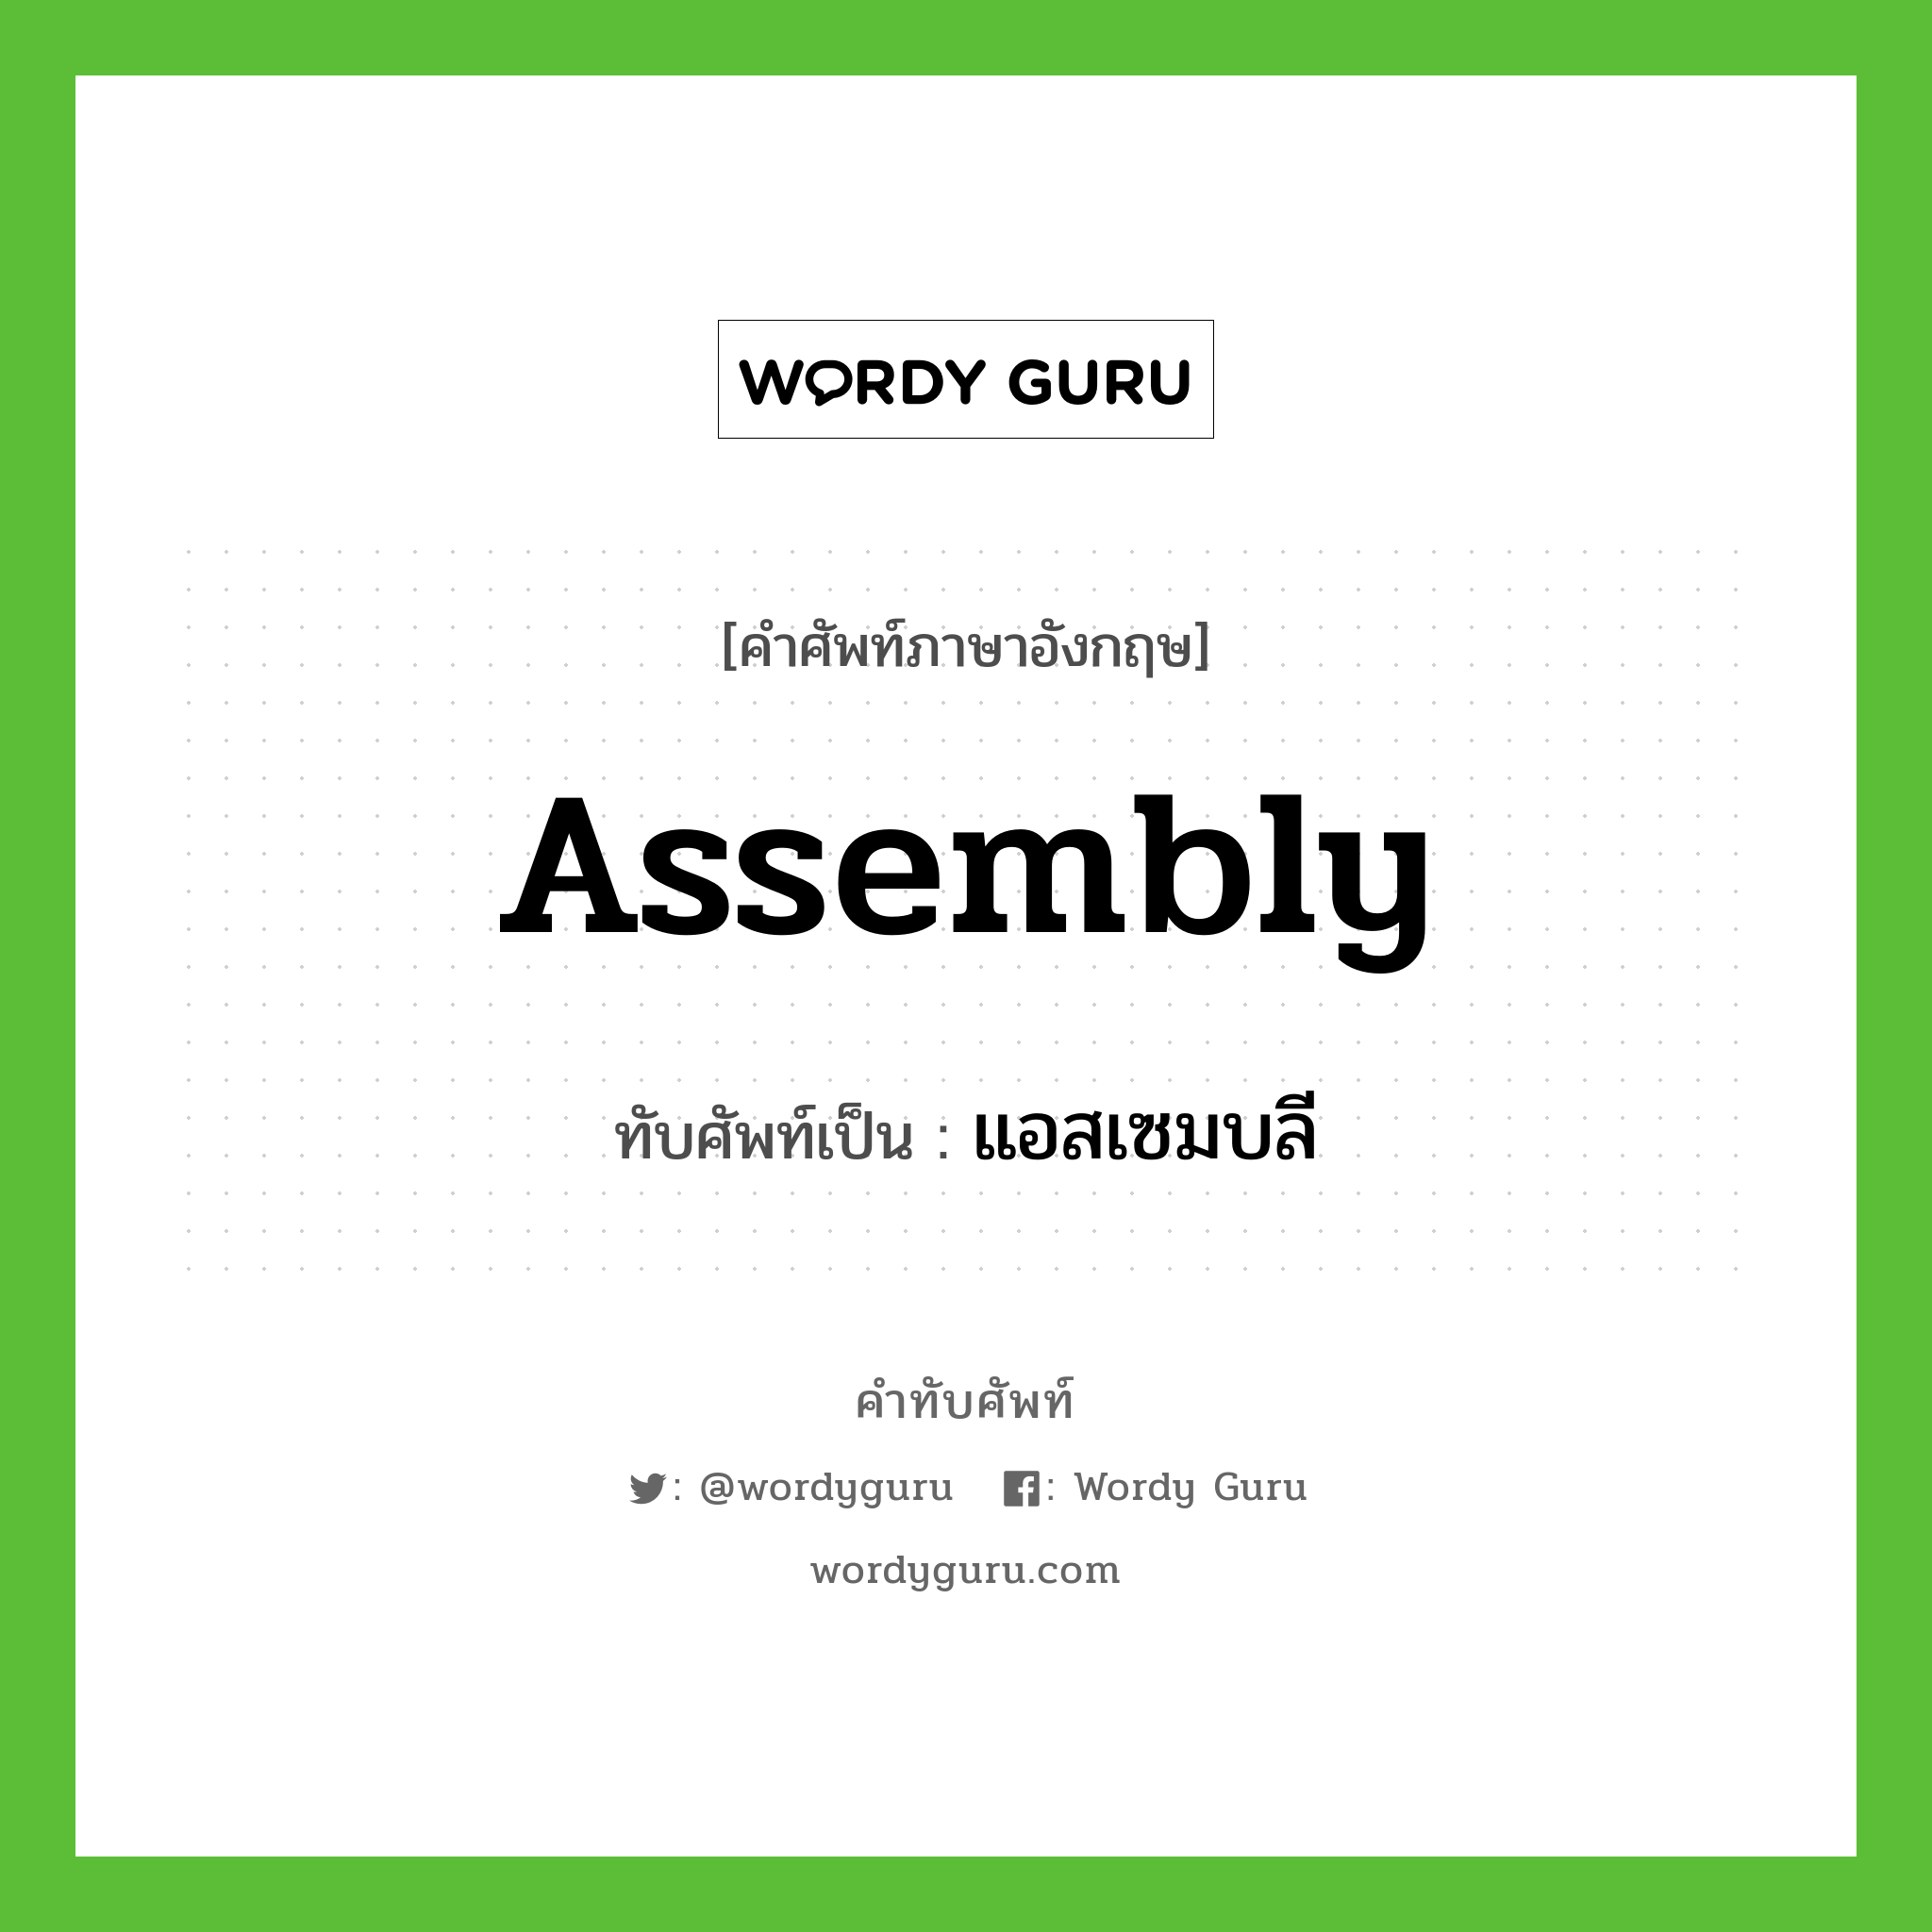 แอสเซมบลี เขียนอย่างไร?, คำศัพท์ภาษาอังกฤษ แอสเซมบลี ทับศัพท์เป็น assembly